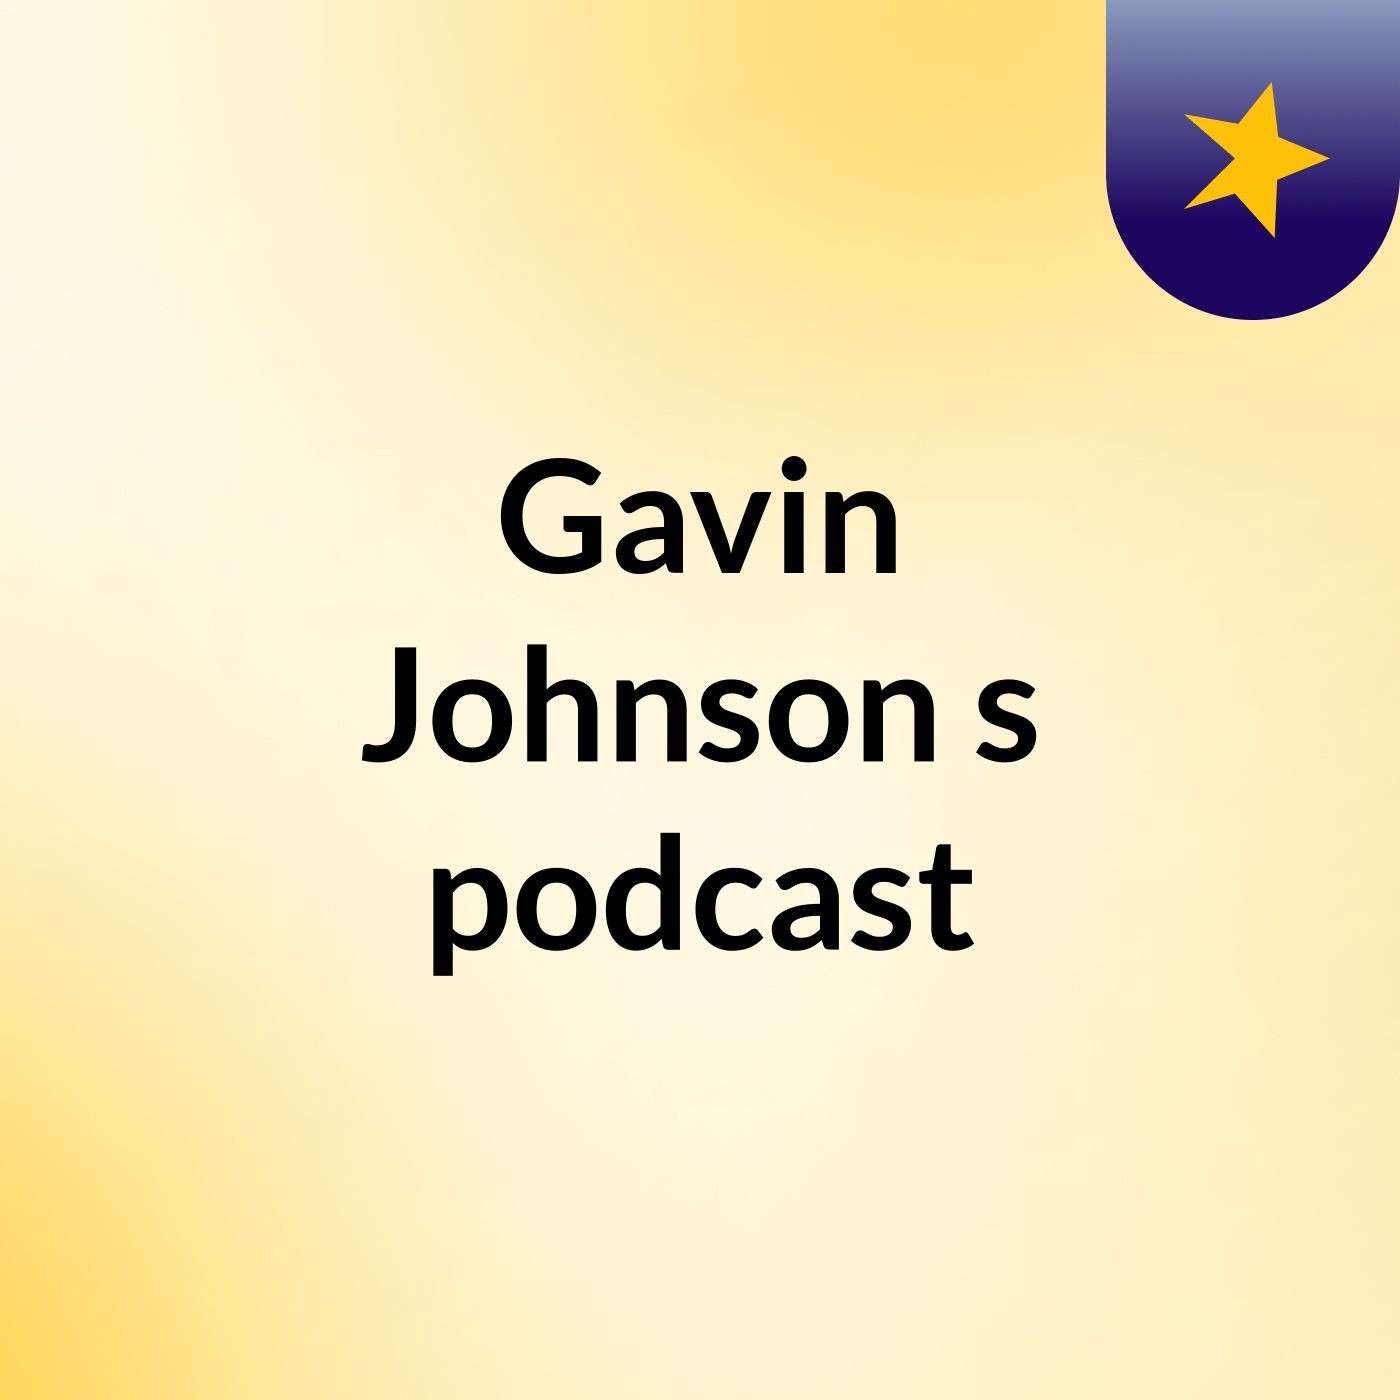 Episode 5 - Gavin Johnson's podcast